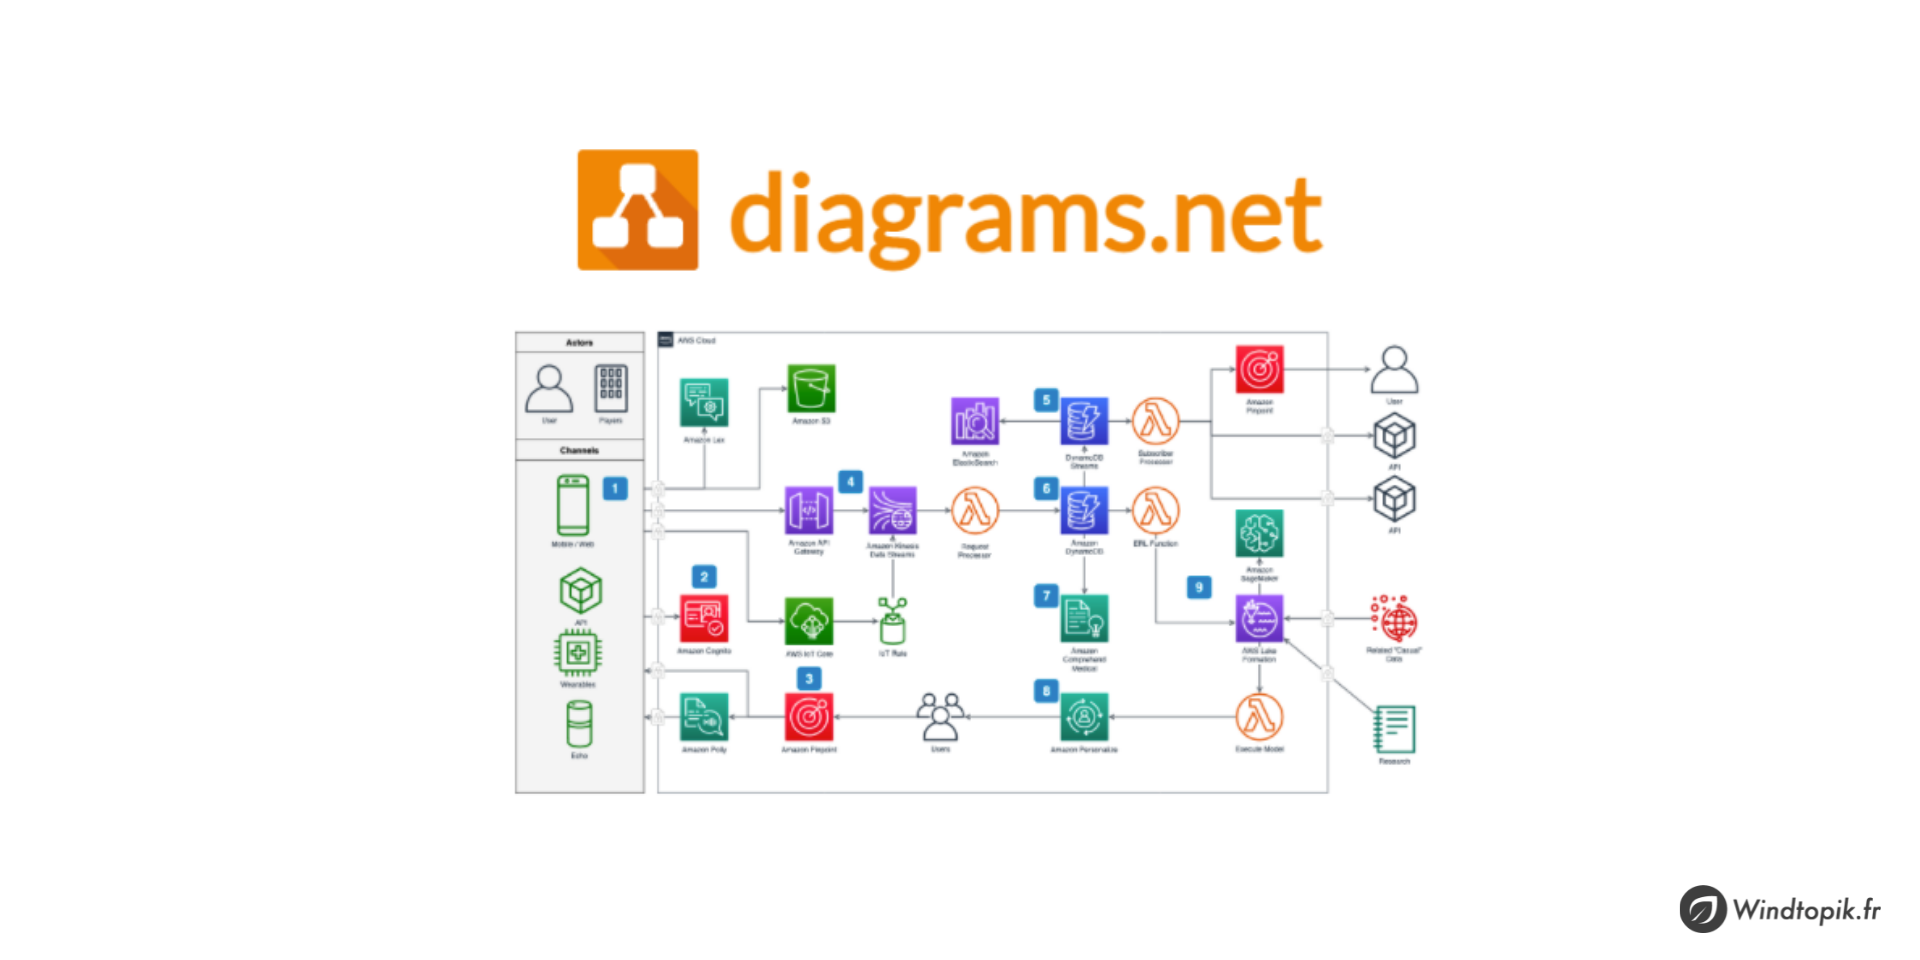 Diagrams.net : créez des diagrammes, organigrammes (et plus encore…)